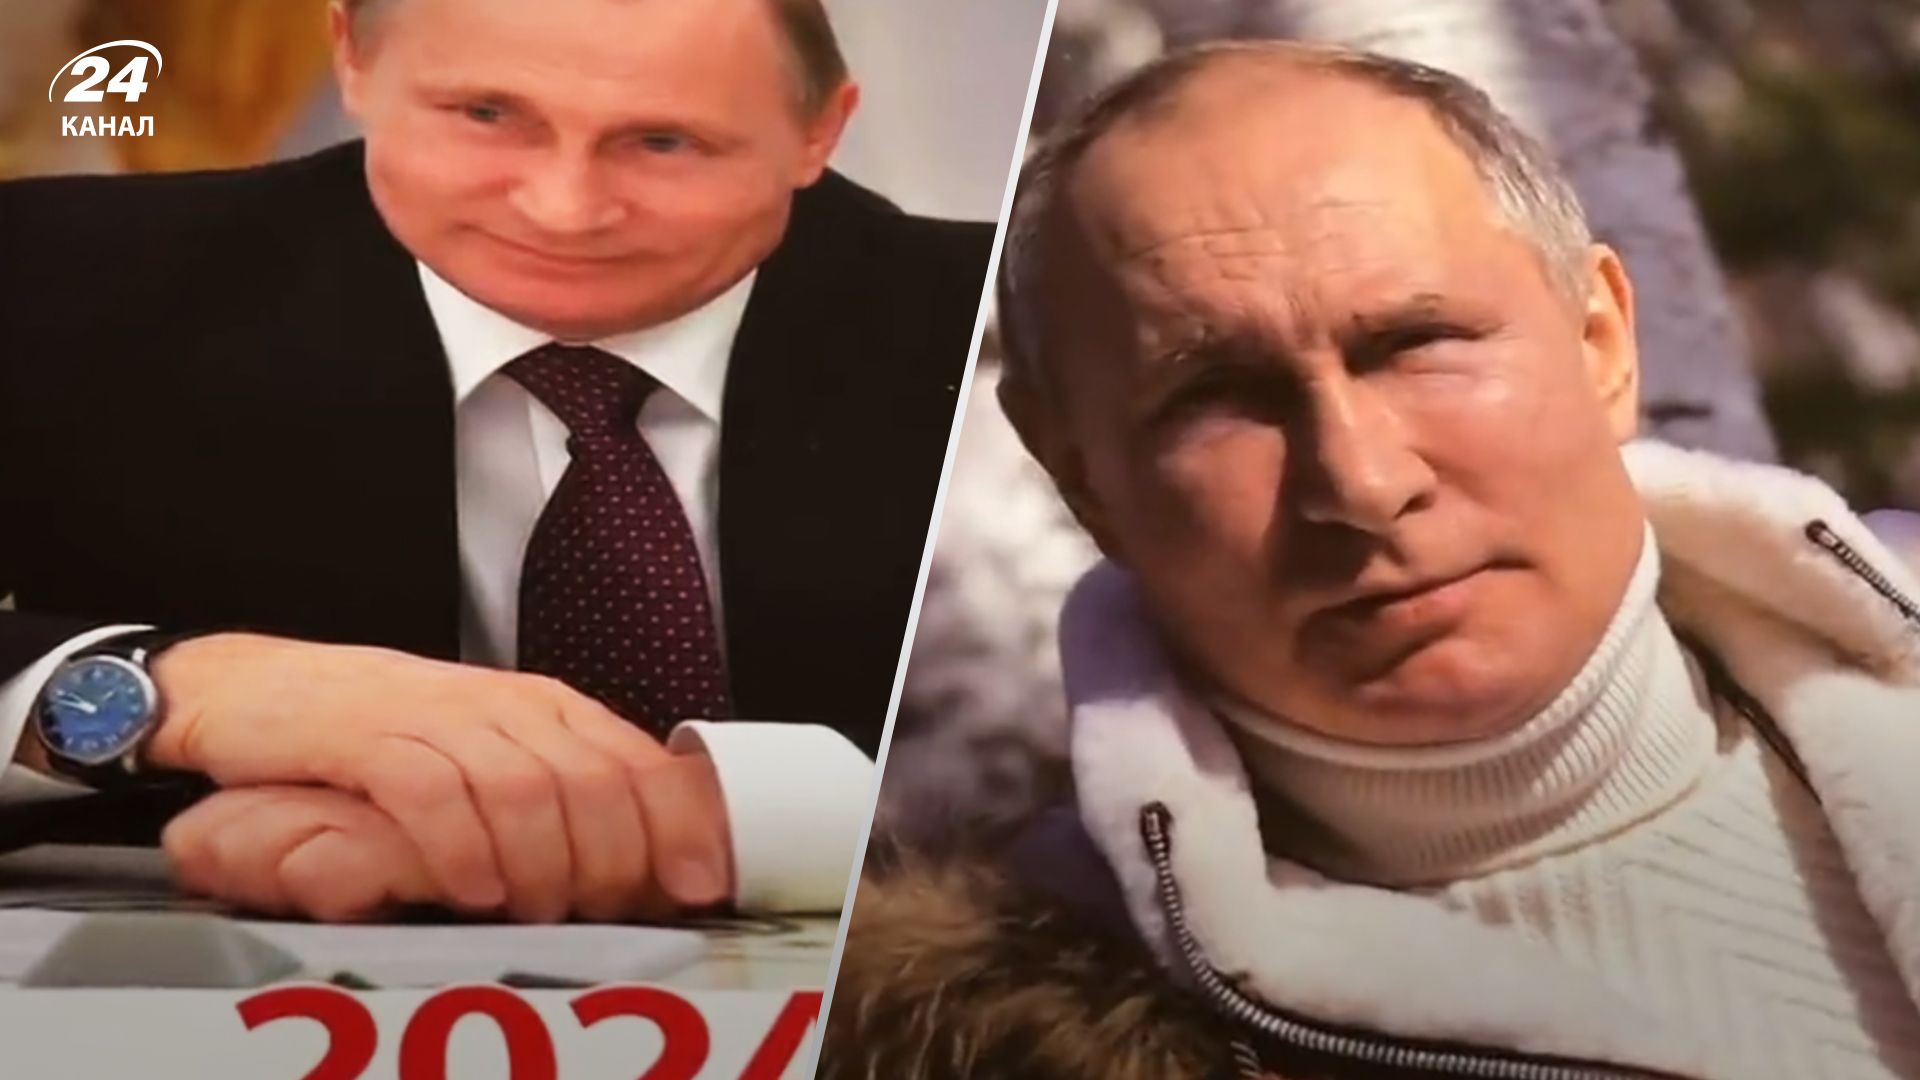 Владимир Путин болен – канлендарь с президентом России на 2024 год подогрел эти слухи